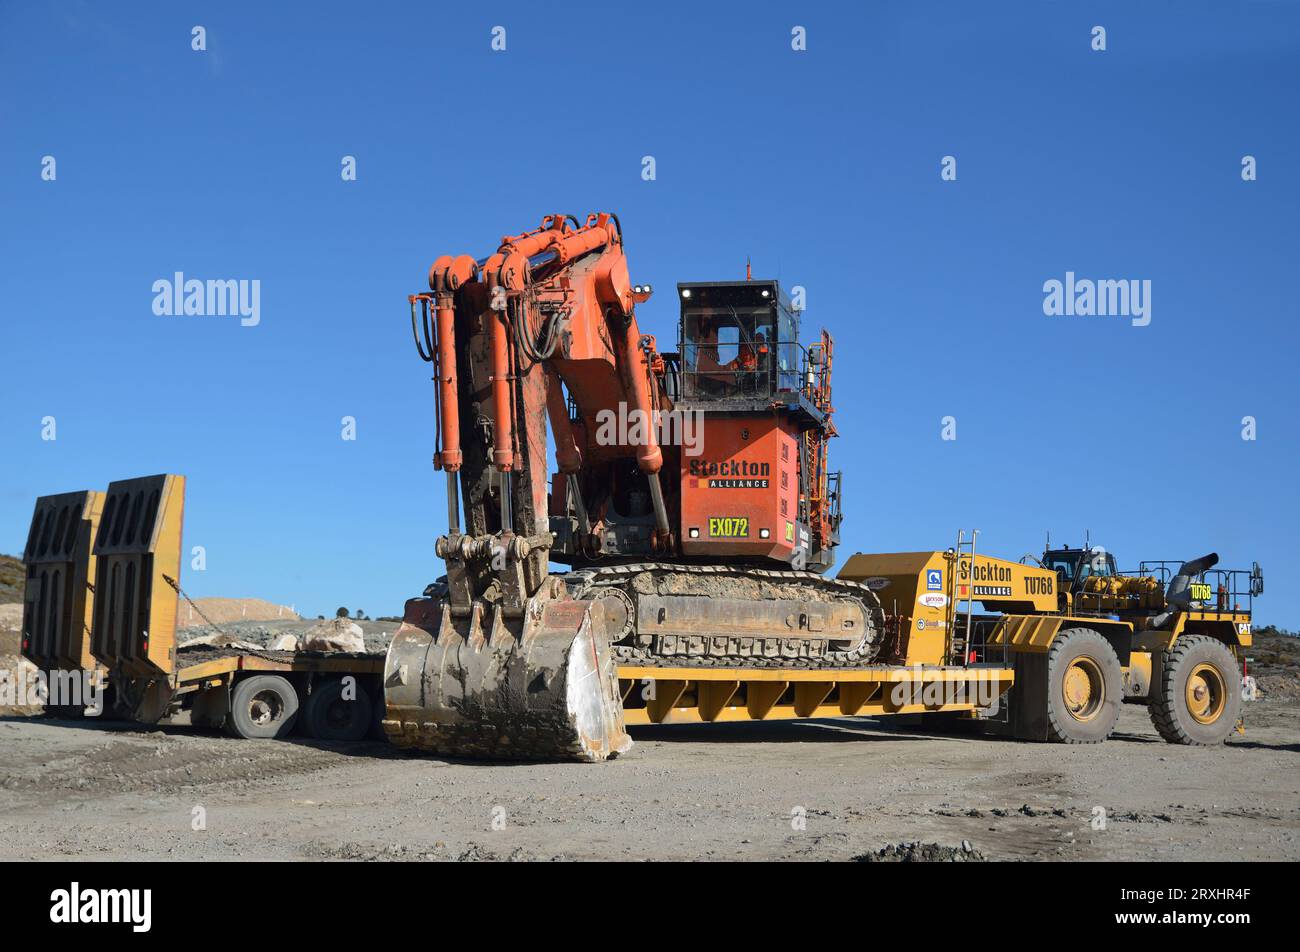 WESTPORT, NOUVELLE-ZÉLANDE, 31 AOÛT 2013 : des hommes chargent une pelle de 190 tonnes sur un transporteur à 48 roues construit sur mesure à la mine de charbon de Stockton le 31 août 2013 Banque D'Images